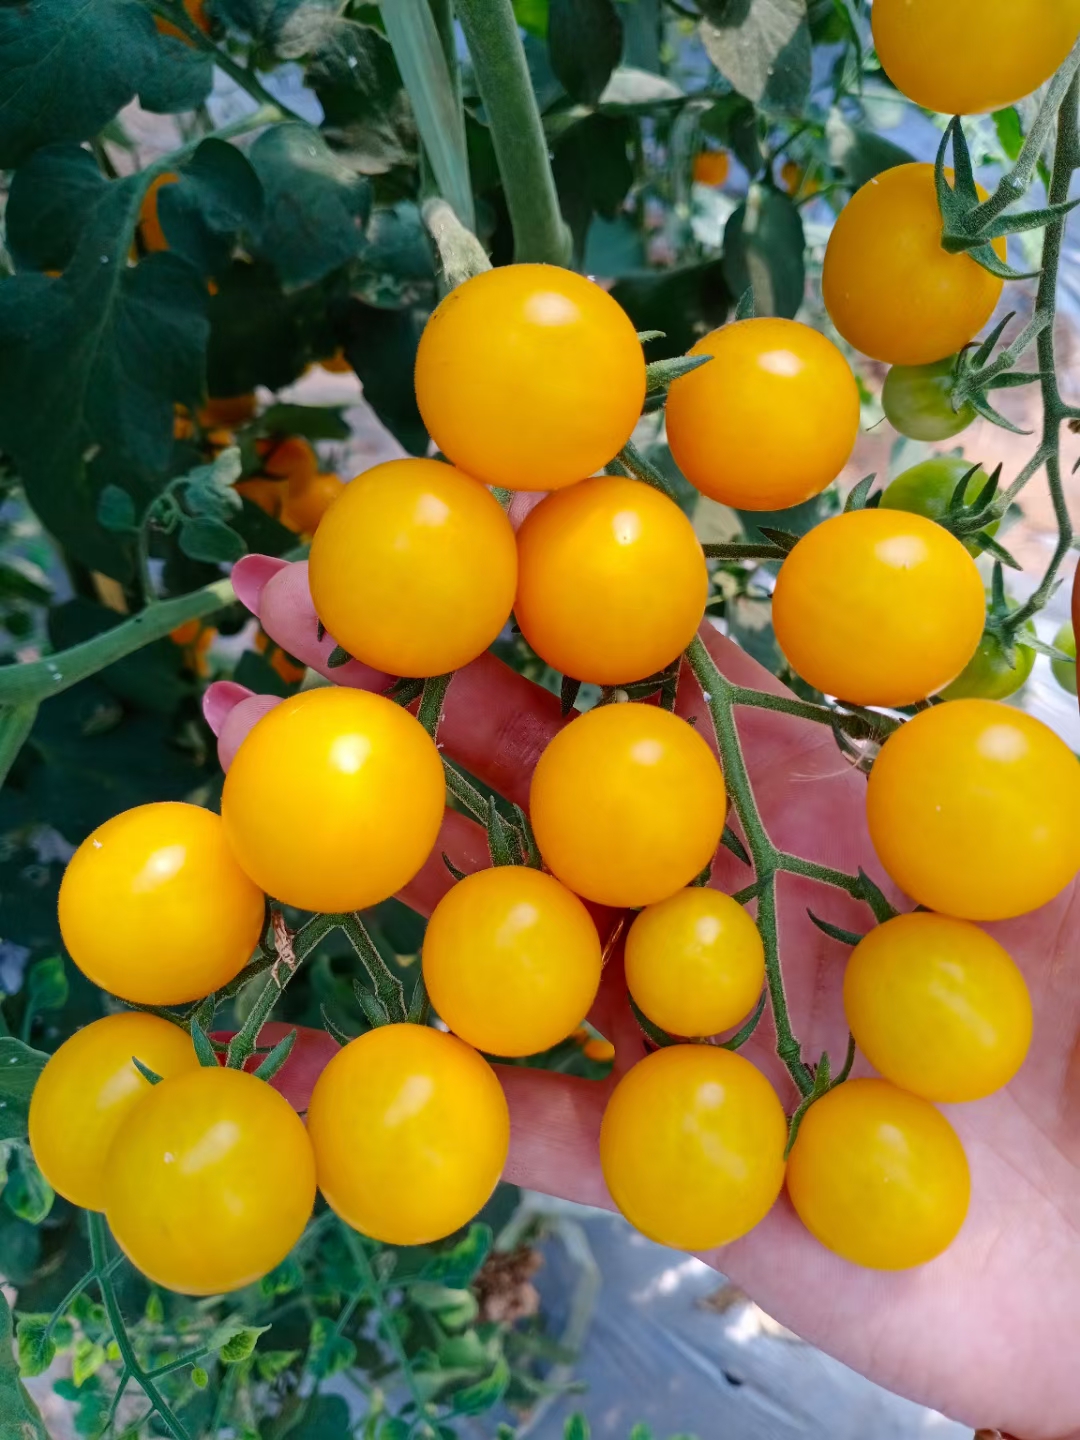 [西红柿批发]西红柿 夏日阳光小黄番茄价格6元/斤 